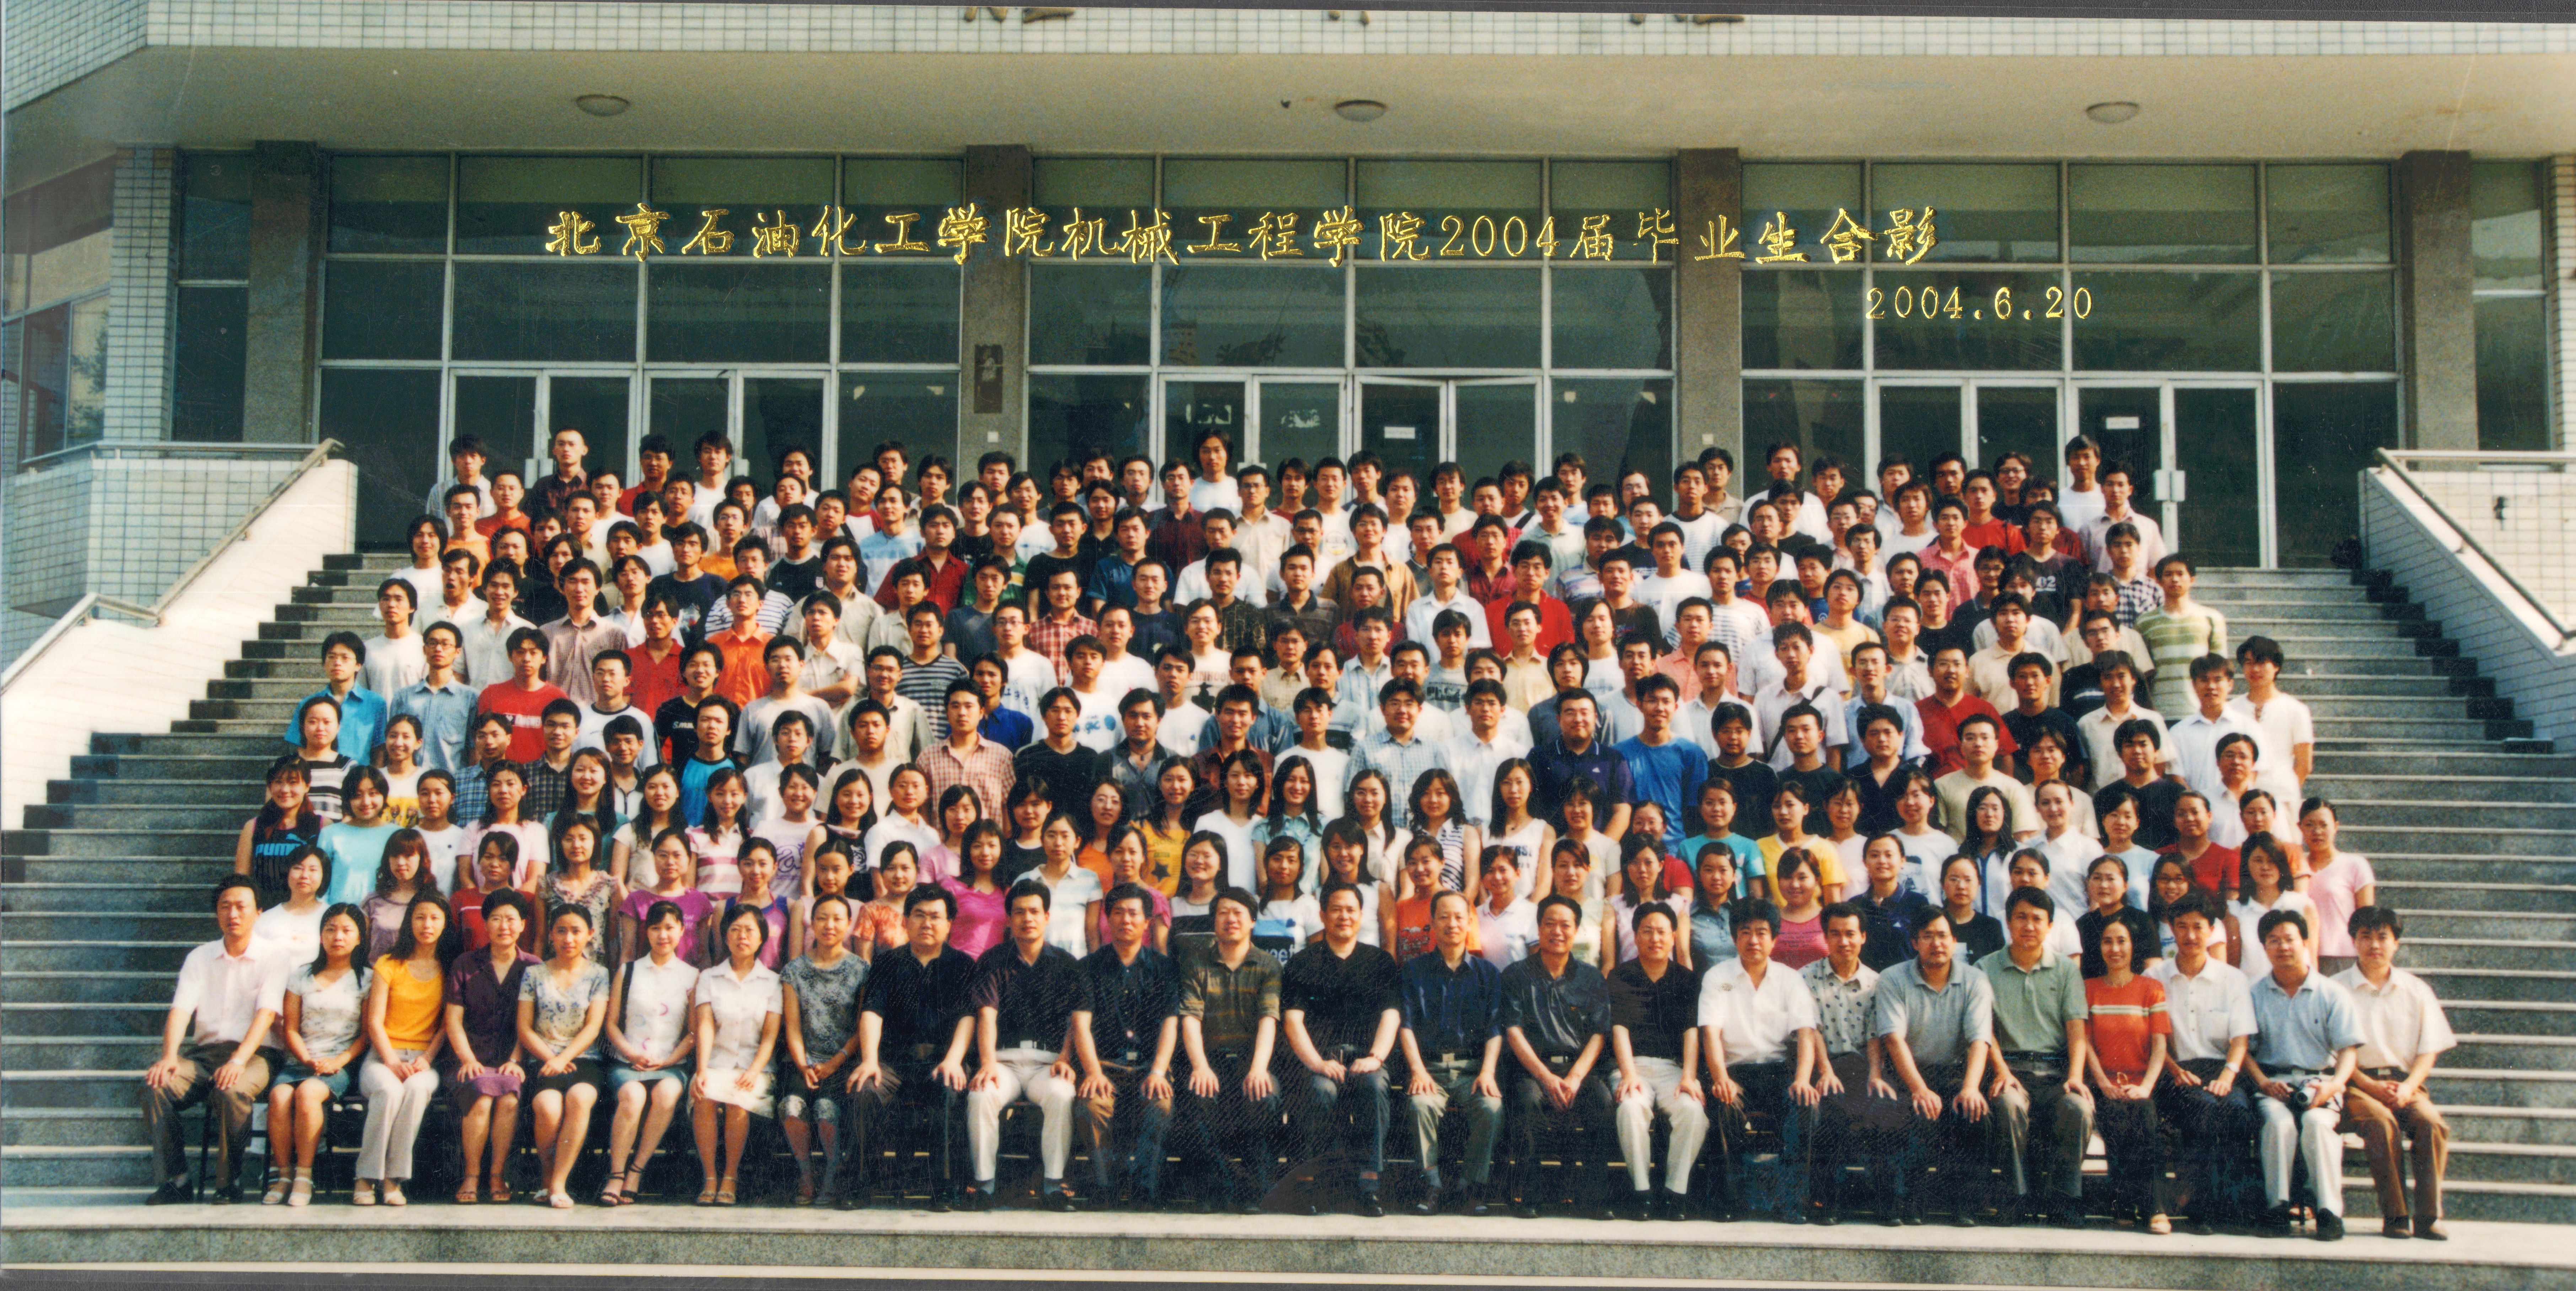 银河集团:198net有限公司机械工程学院2004届毕业照-1.jpg